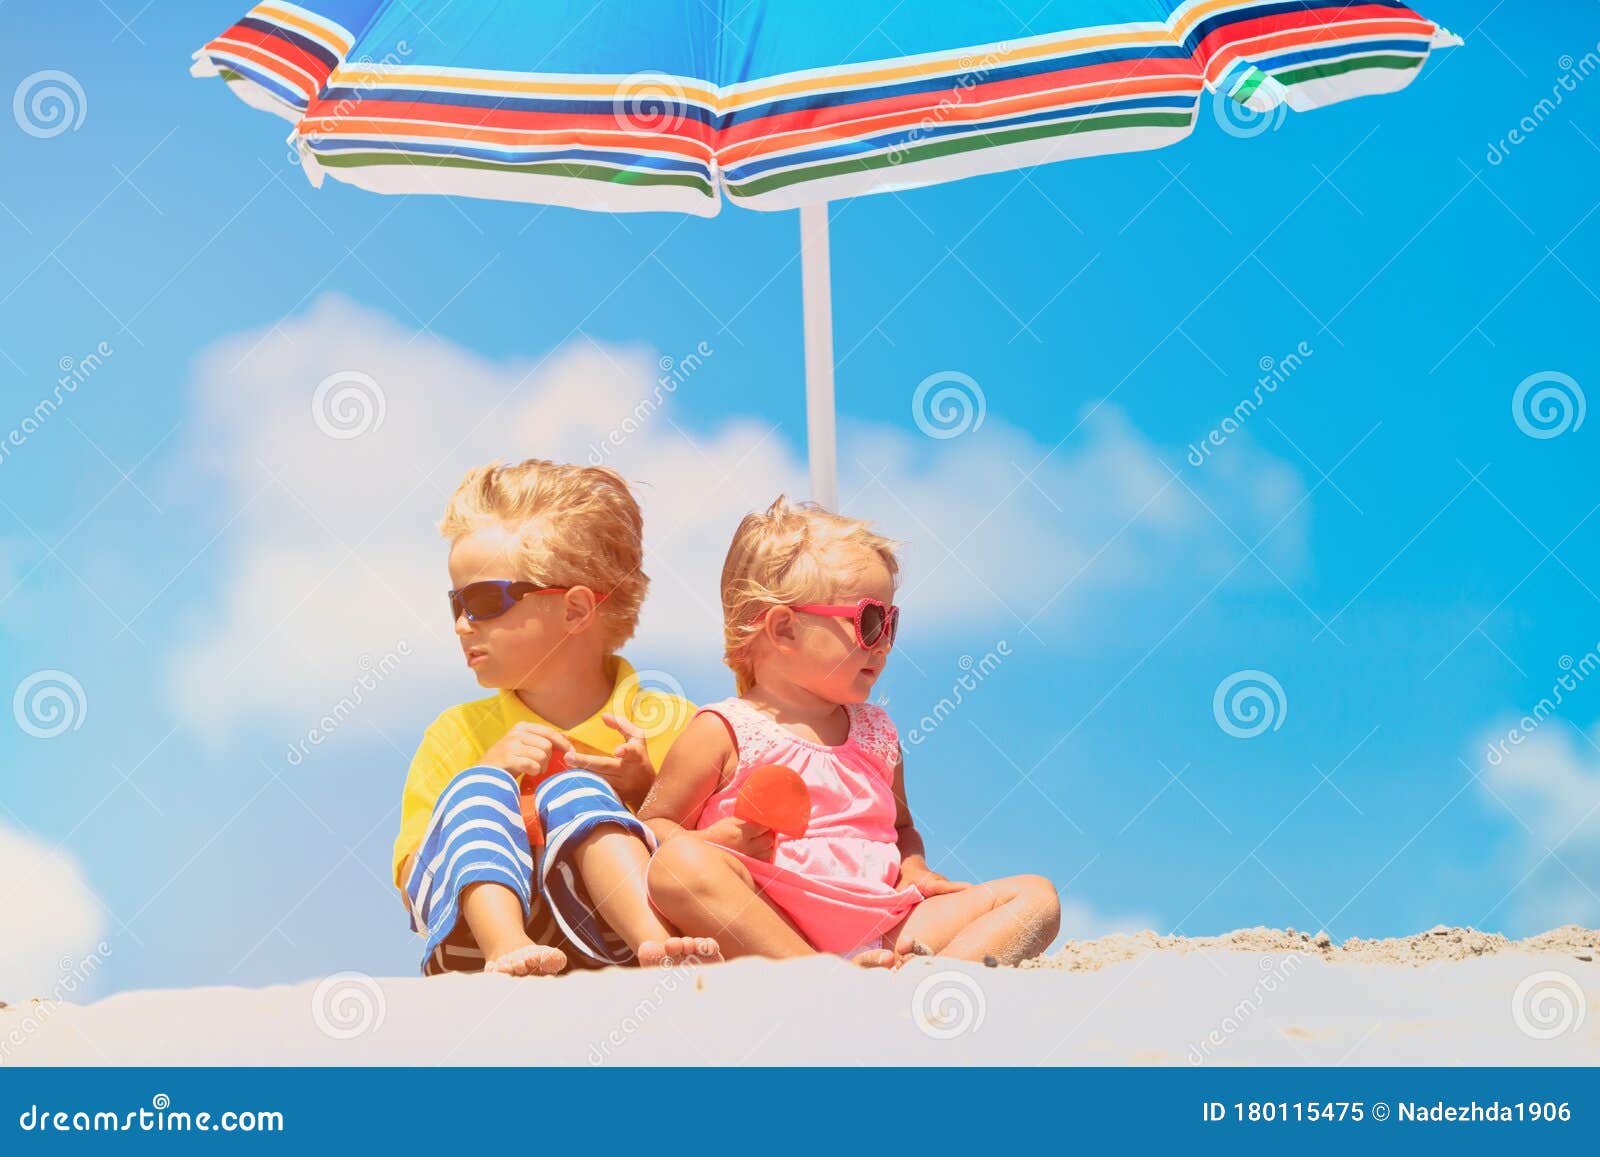 Un Para Niños Y Niñas Bajo Sombrillas En La Playa De Verano Imagen de archivo - Imagen de familia, sombrilla: 180115475